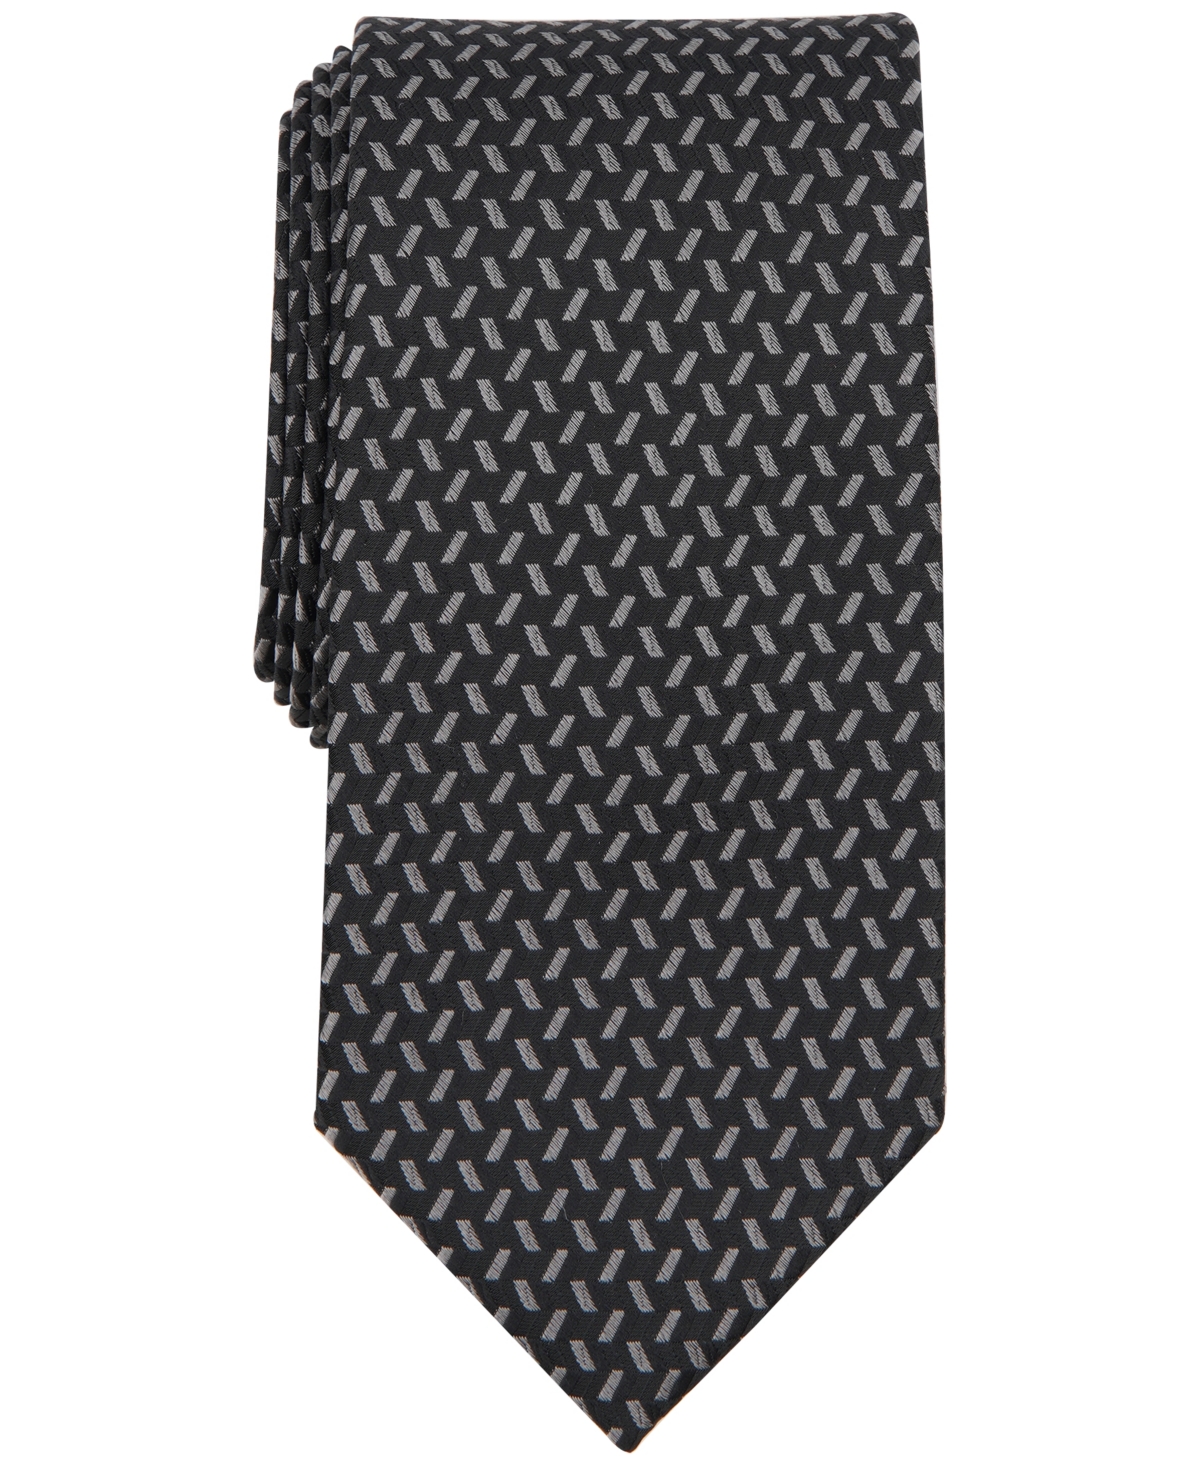 Michael Kors Men's Begley Geo-print Tie In Black